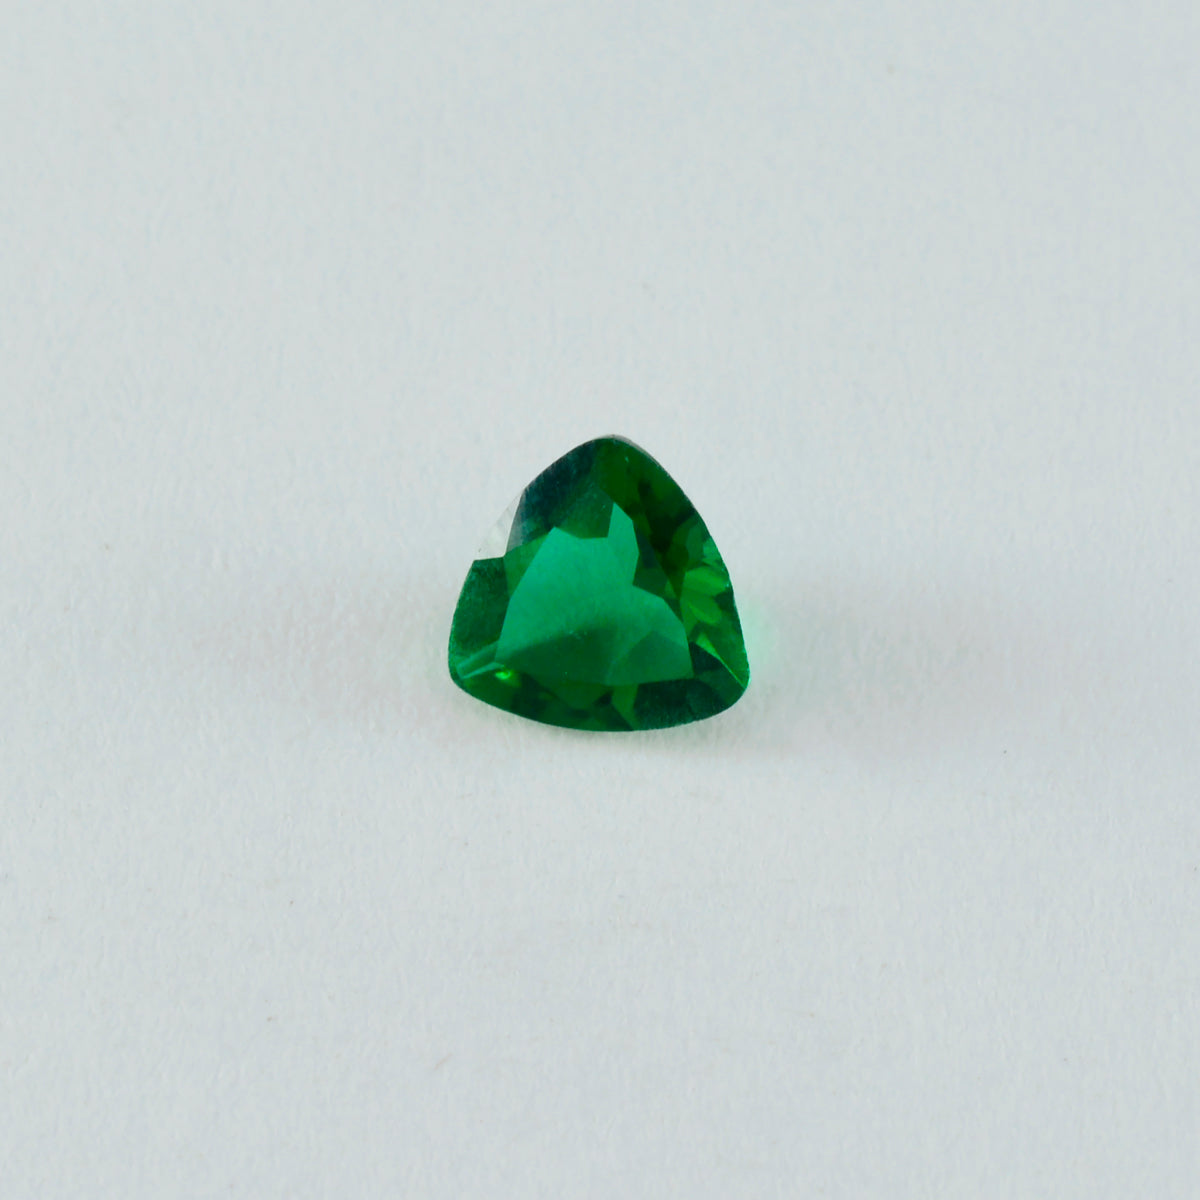 riyogems 1шт зеленый изумруд cz ограненный 15x15 мм форма триллион качество A1 свободный драгоценный камень